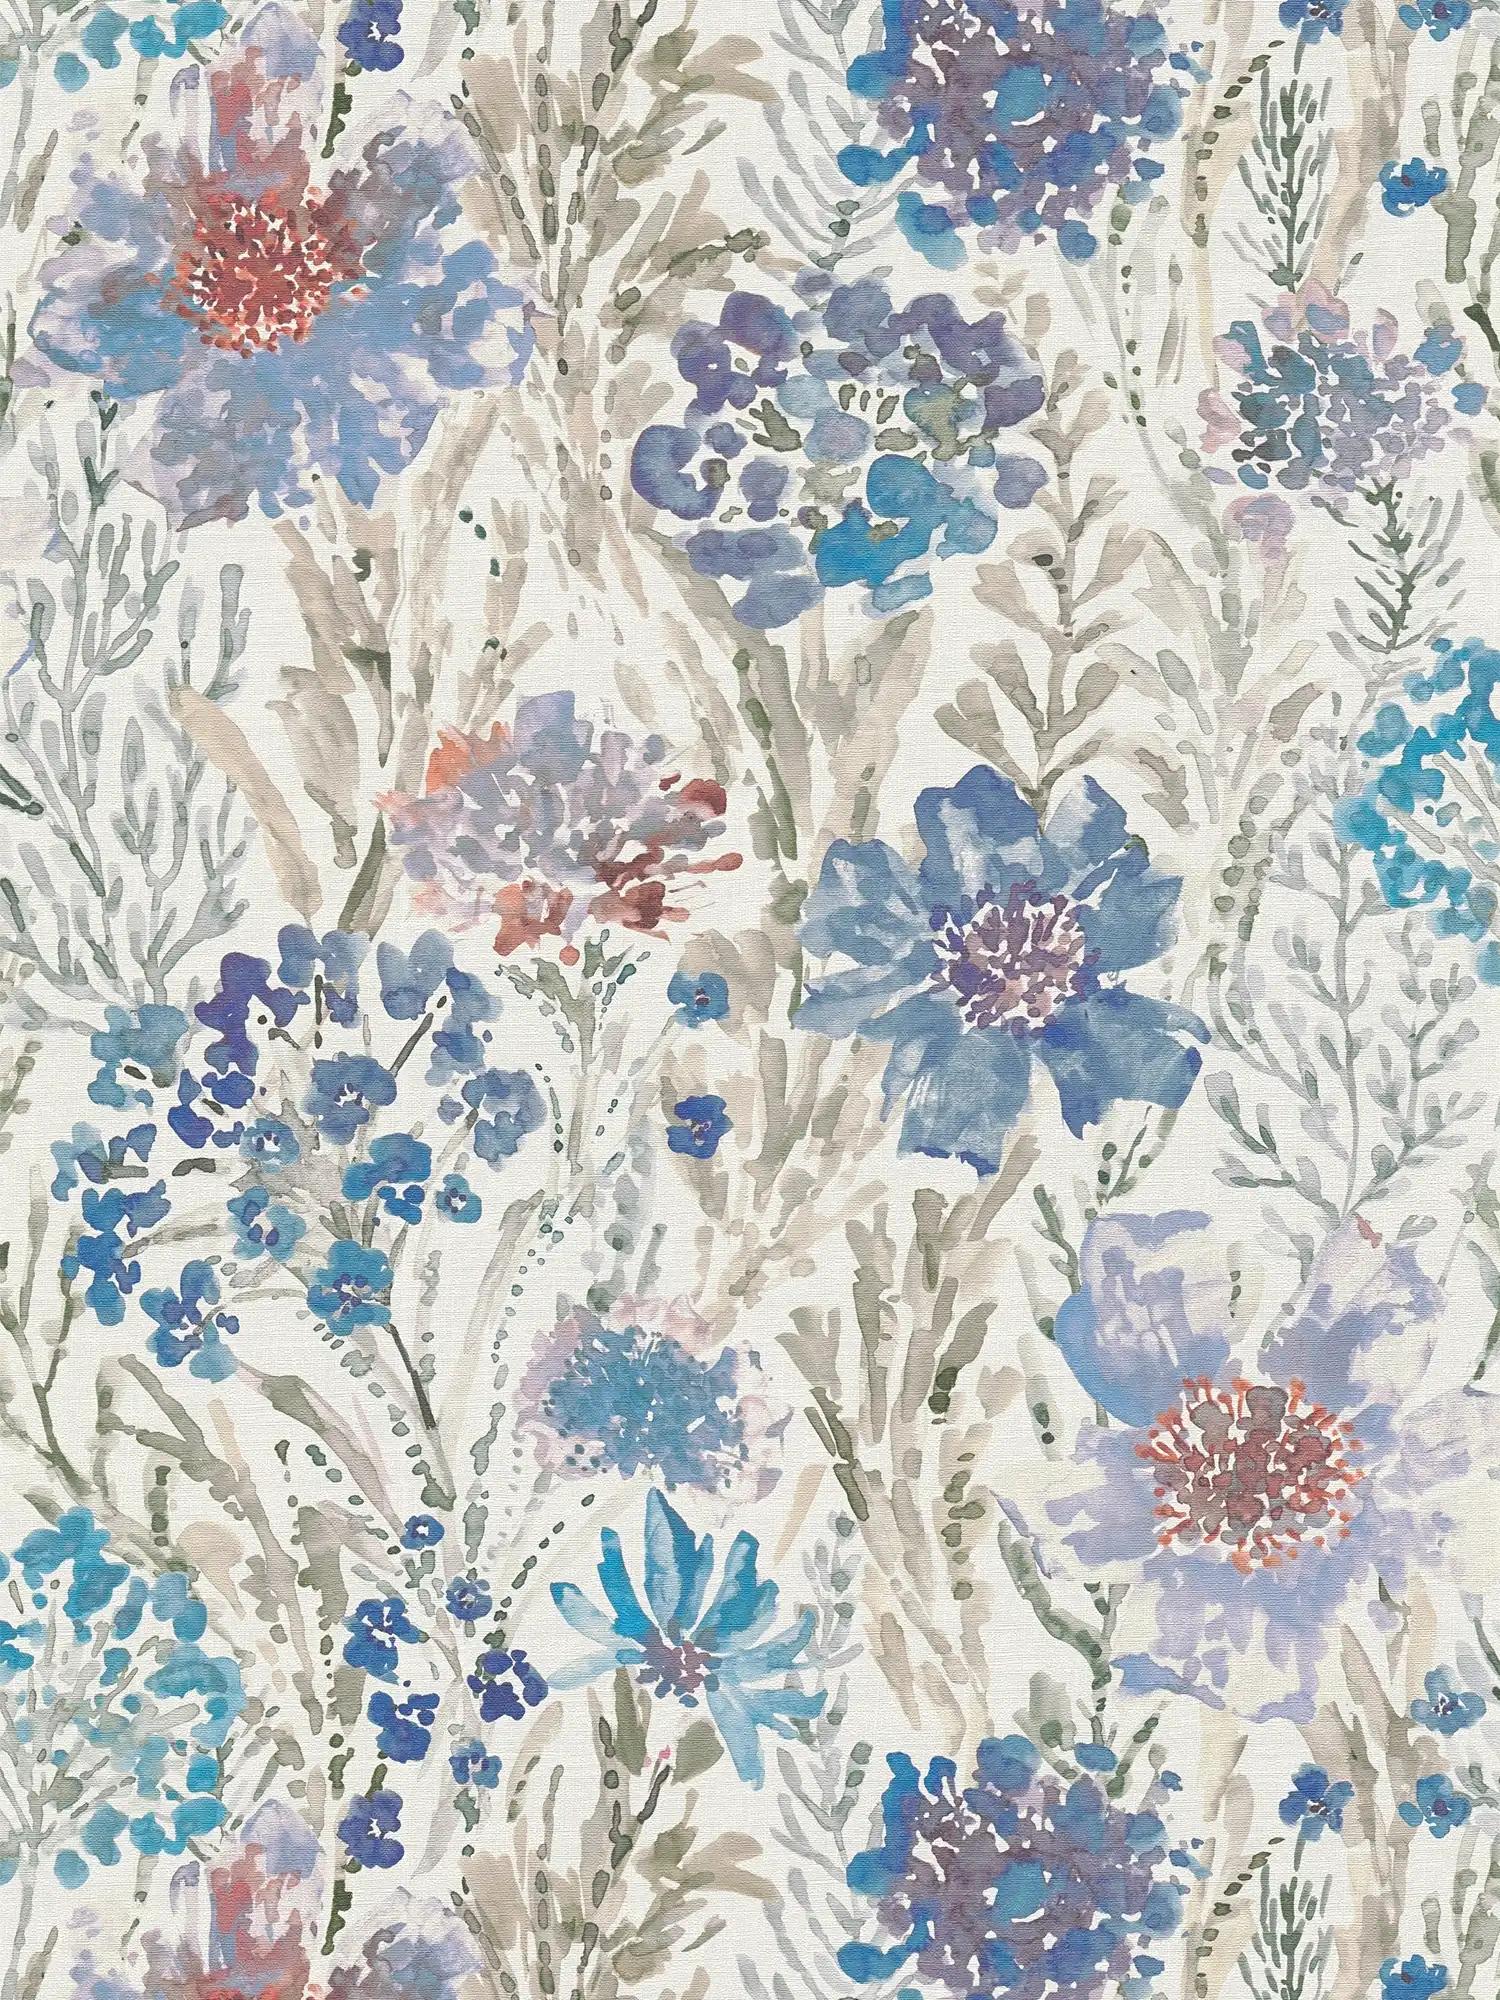 Blumen- und Blütenwiese Vliestapete im Aquarellstil – Blau, Weiß, Grau
